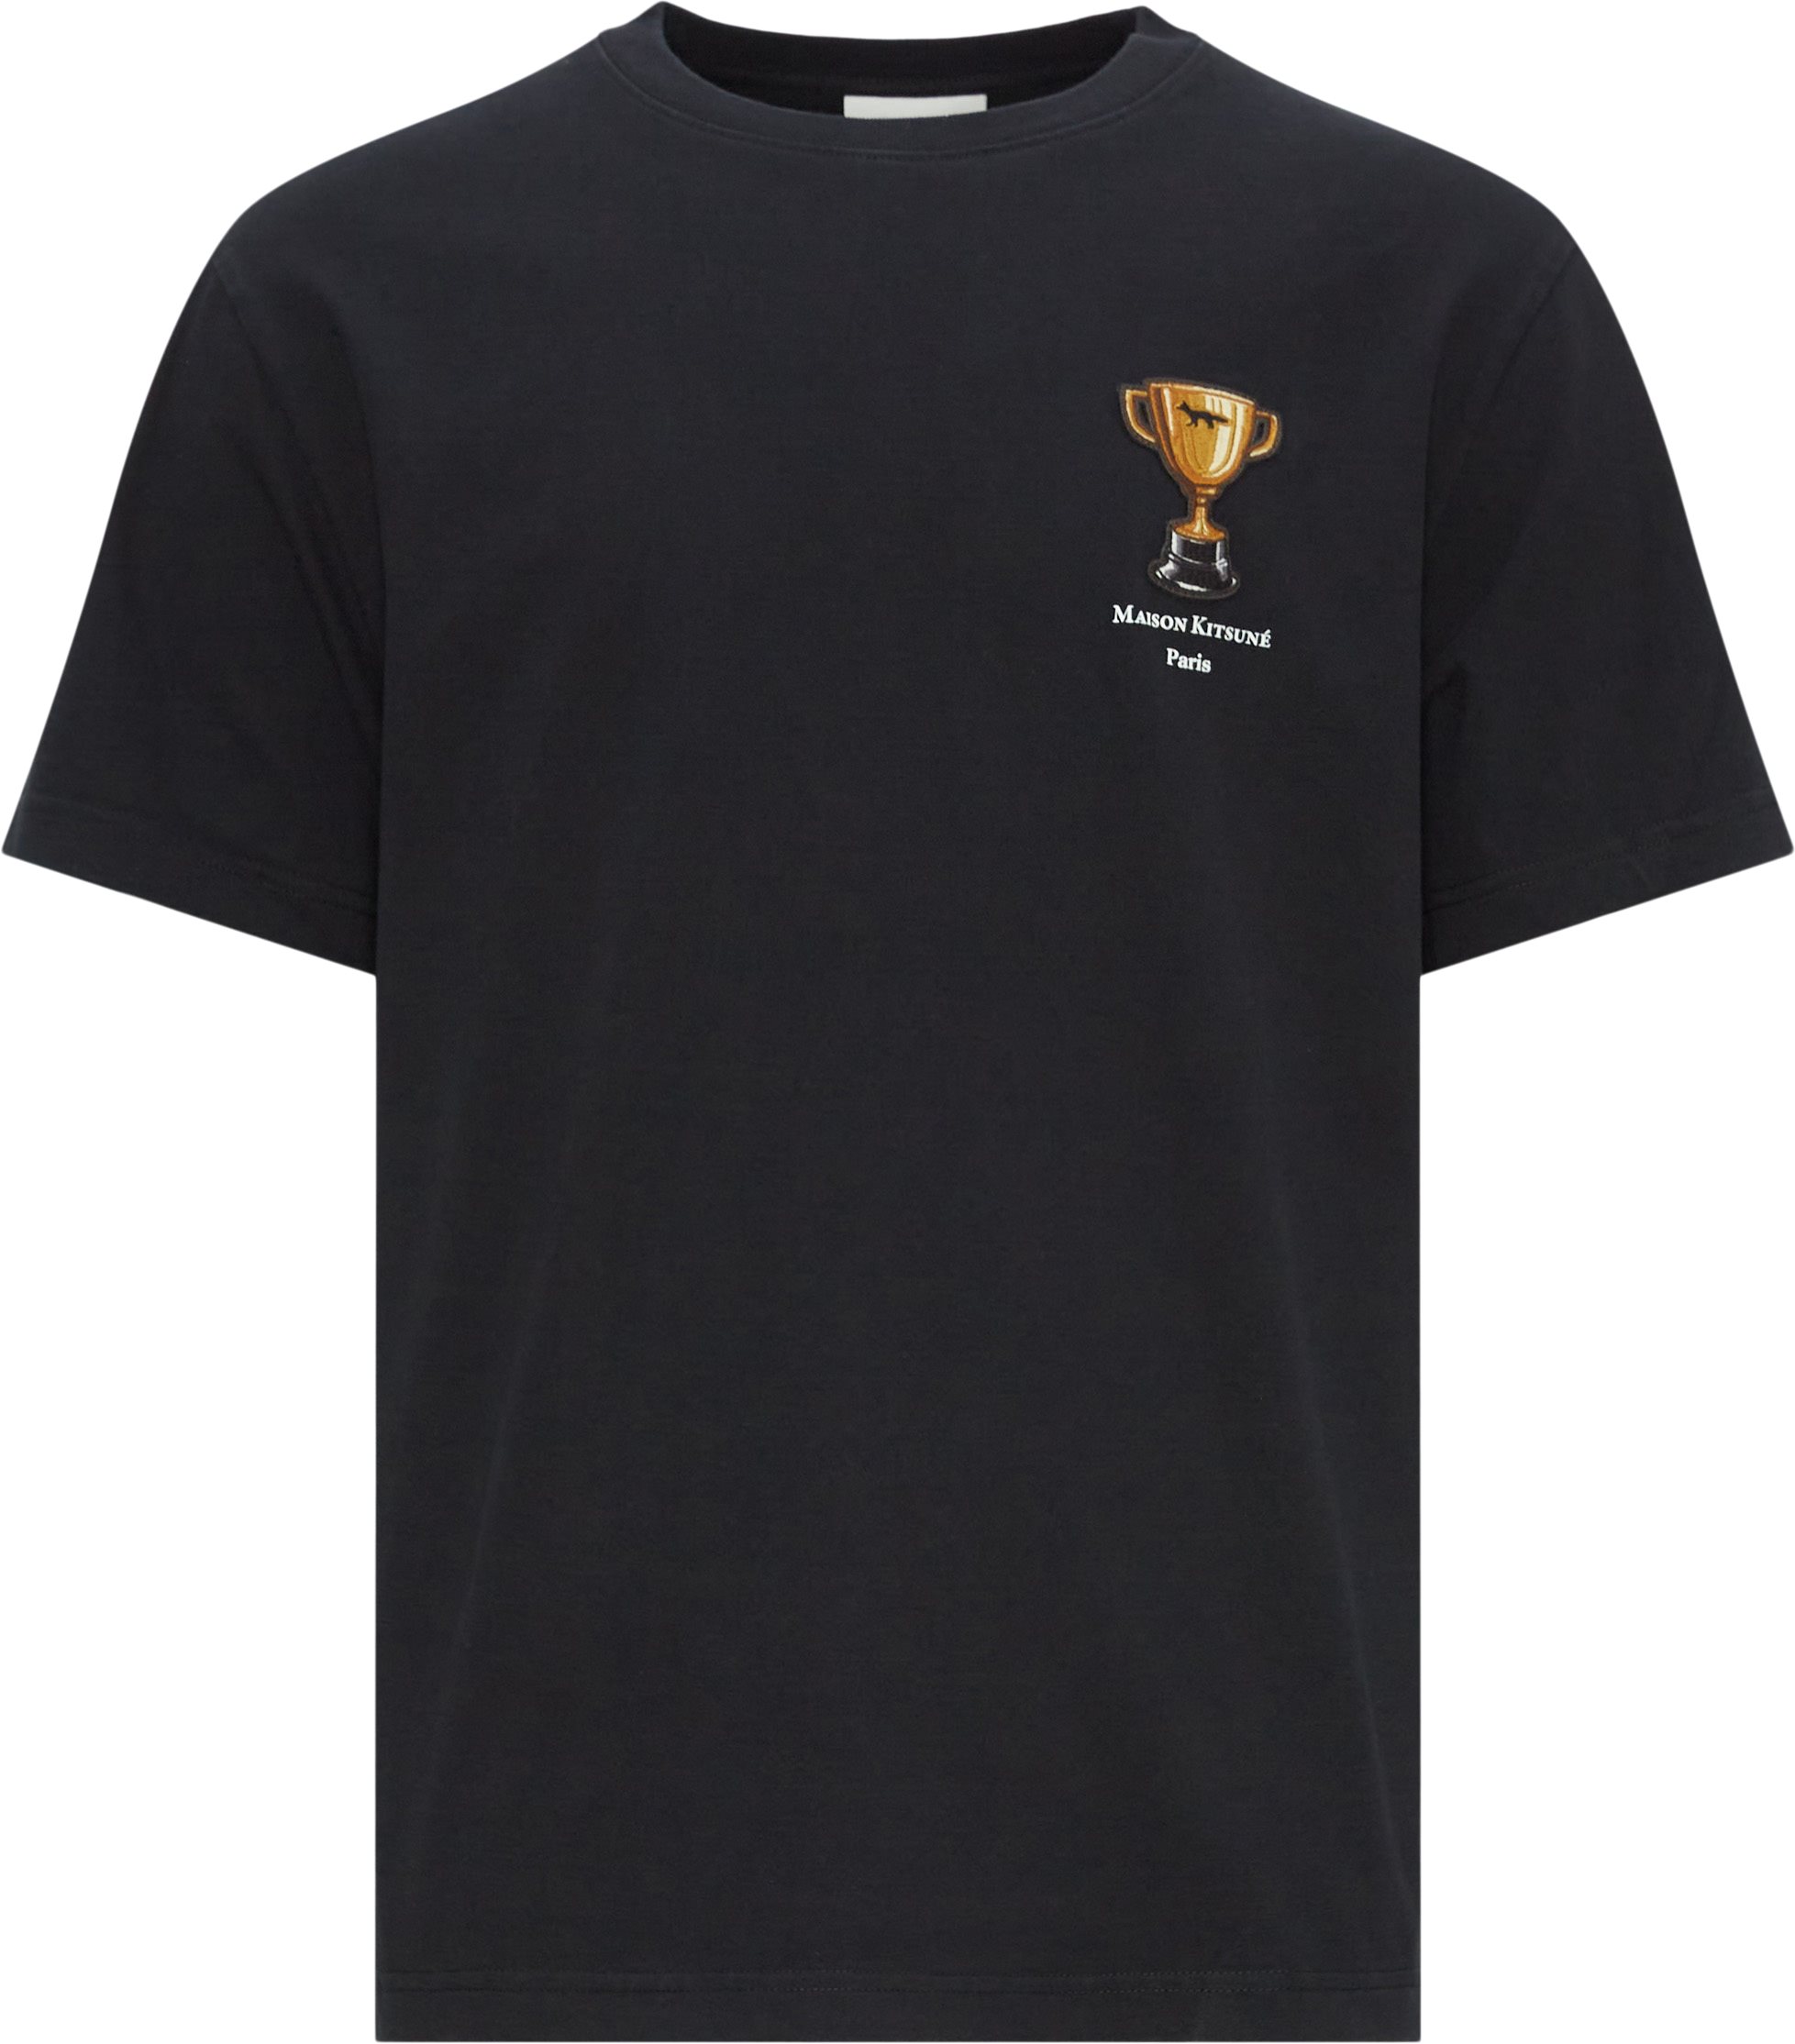 Maison Kitsuné T-shirts LM00124KJ01118 Black